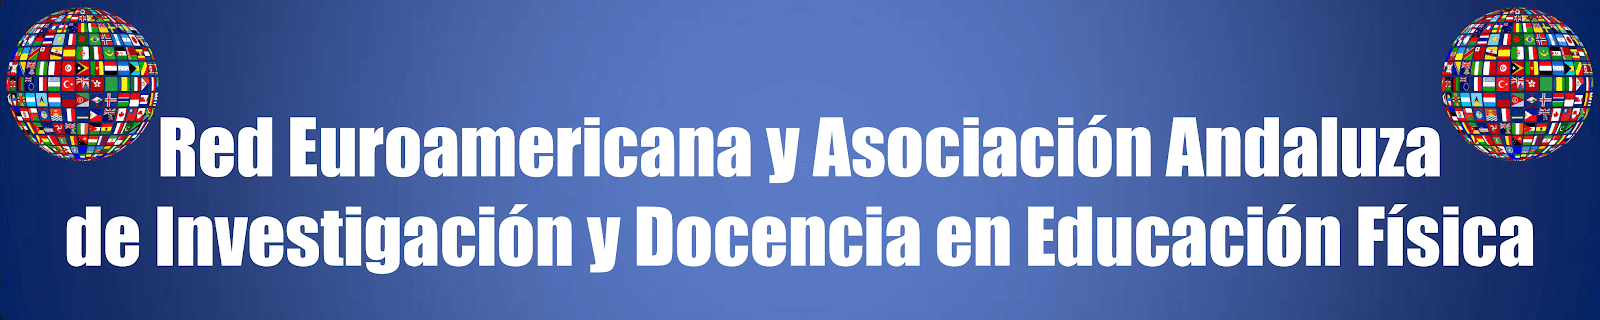 Red Euroamericana y Asociación Andaluza de Investigación y Docencia en Educación Física